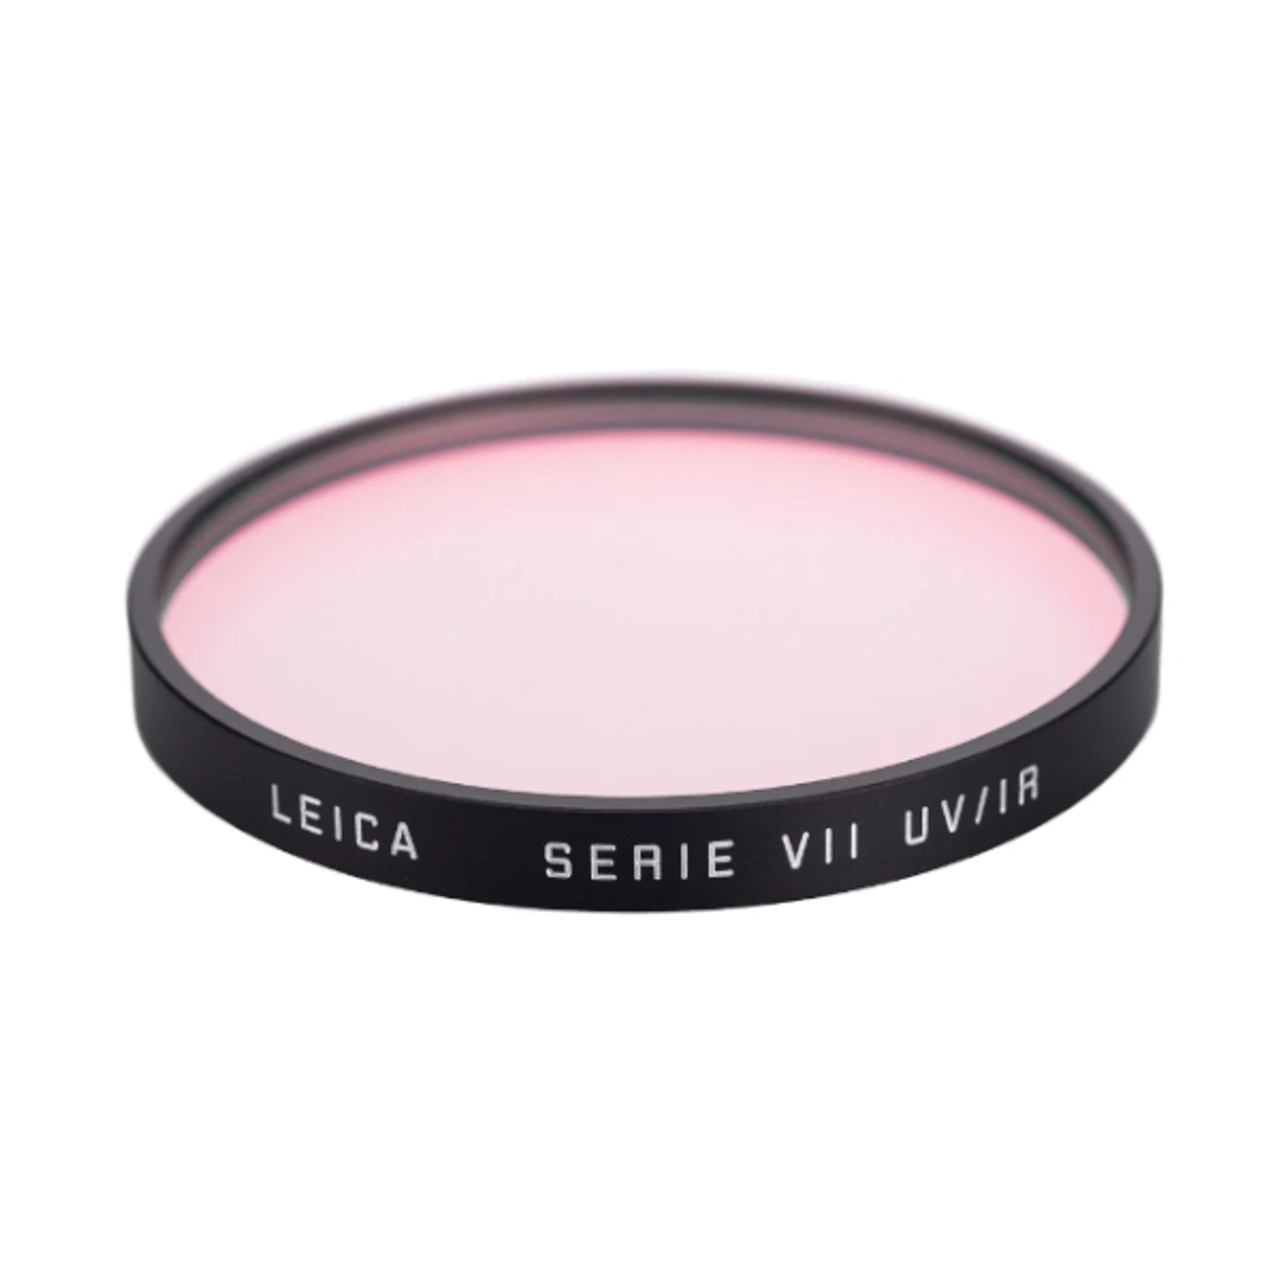 Leica Series 7 UV/IR Filter